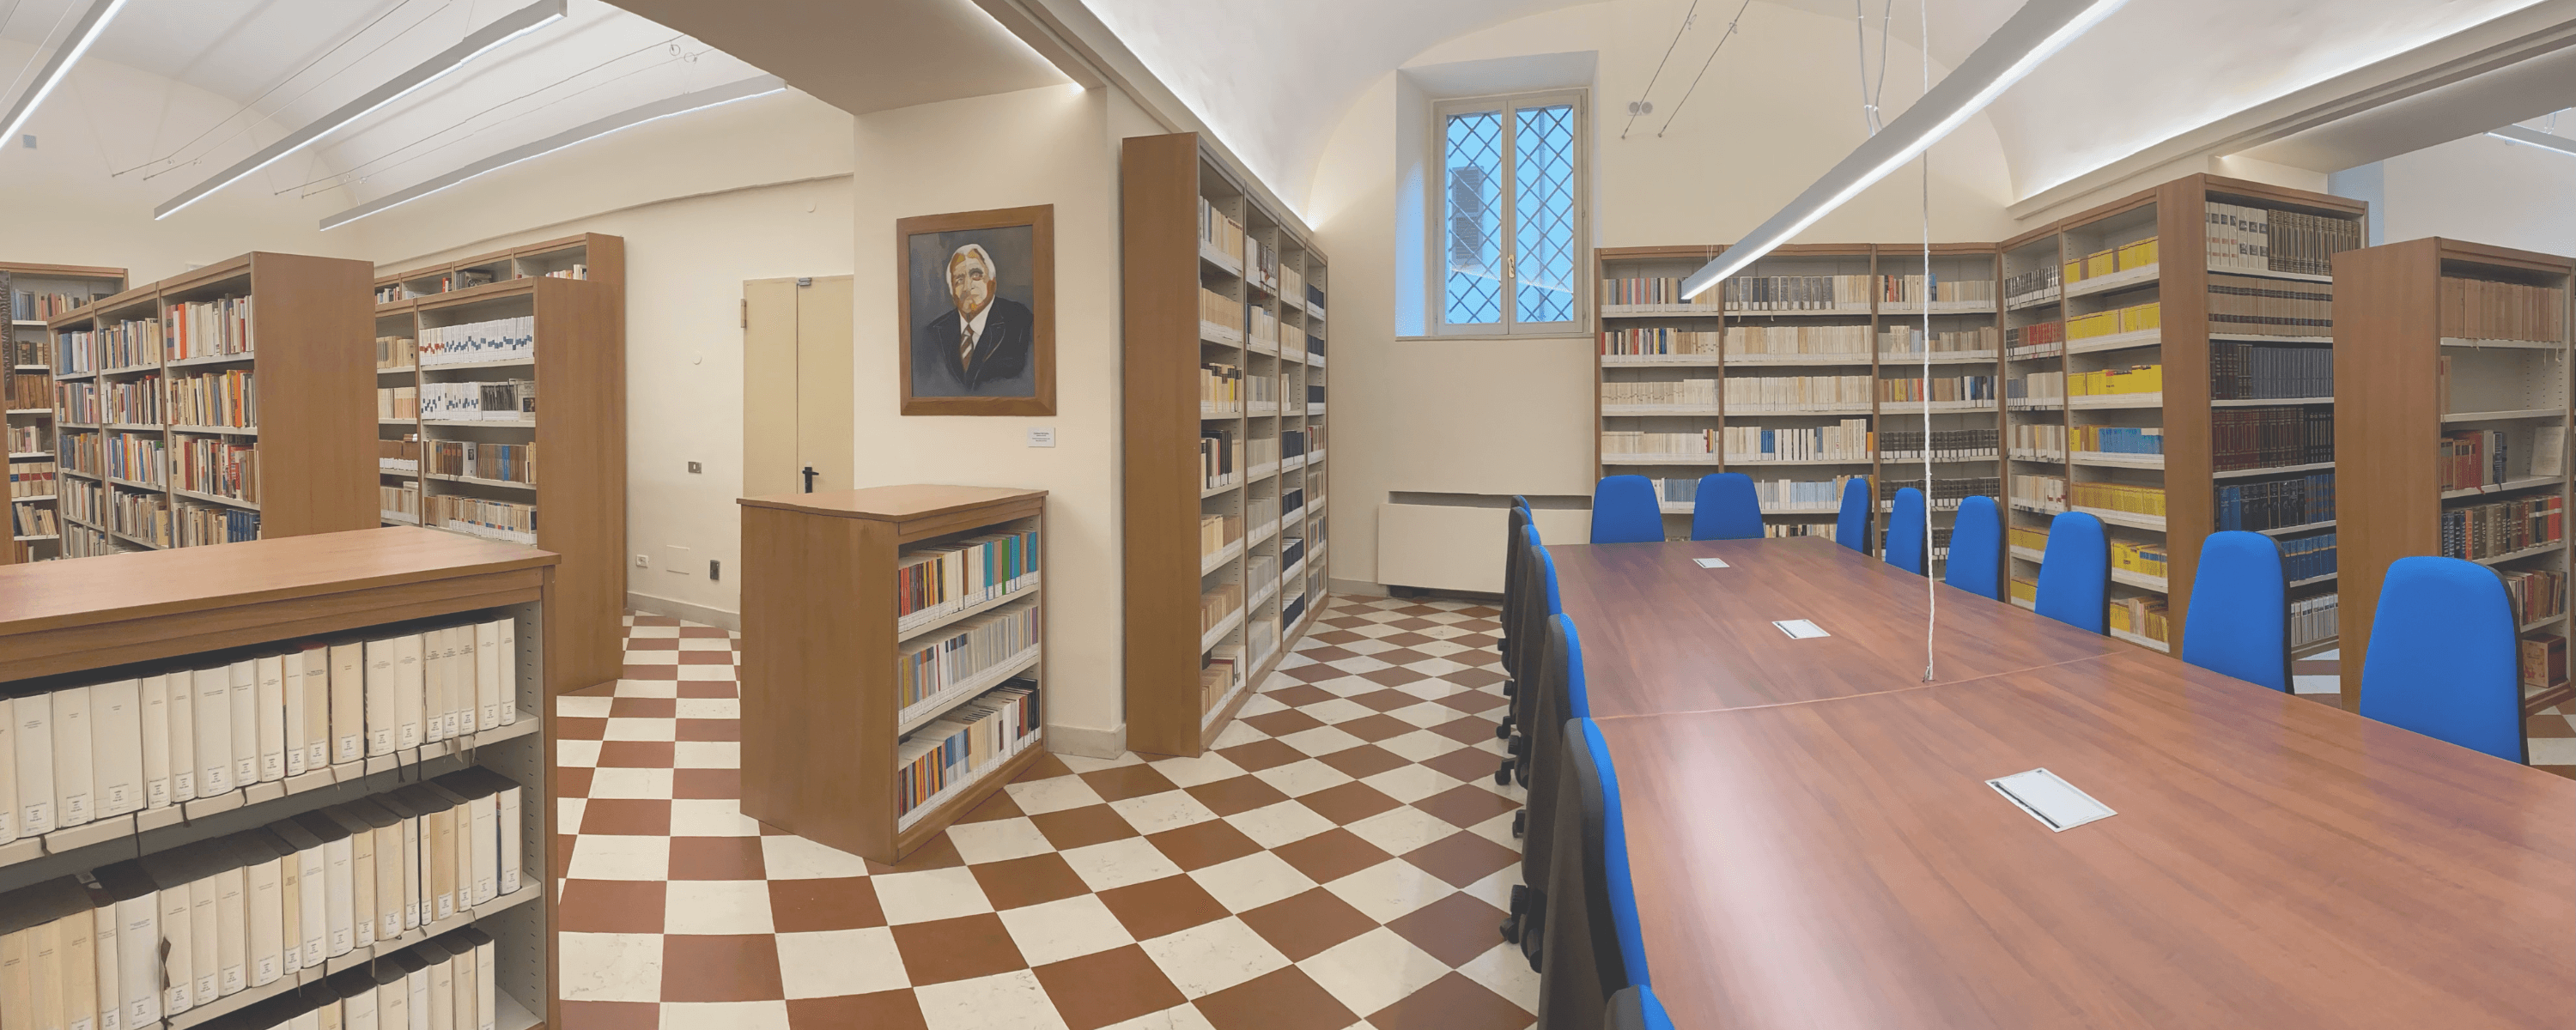 Biblioteca Sabbatini